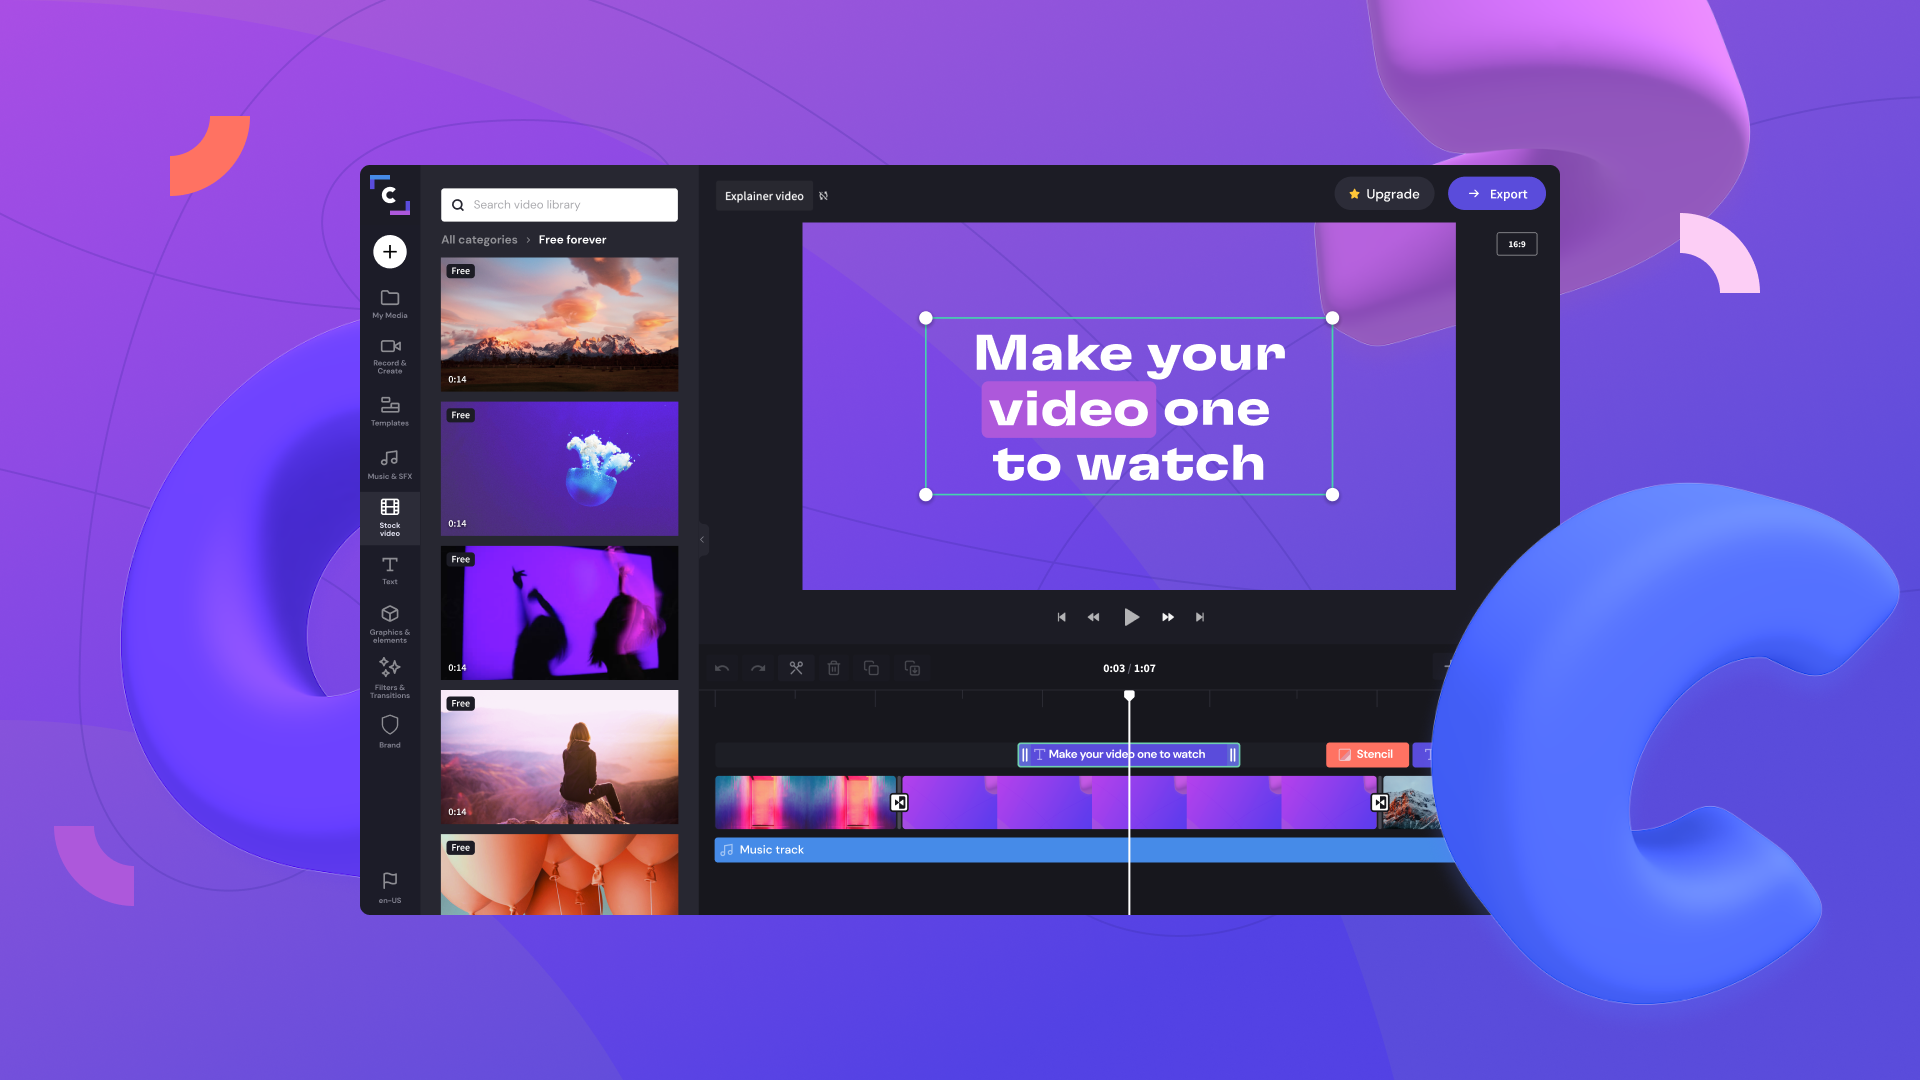 Ảnh chụp màn hình của ứng dụng Clipchamp nằm trên nền đầy màu sắc. Video được chỉnh sửa trong ứng dụng Clipchamp có dòng chữ "Tạo video của bạn để xem".